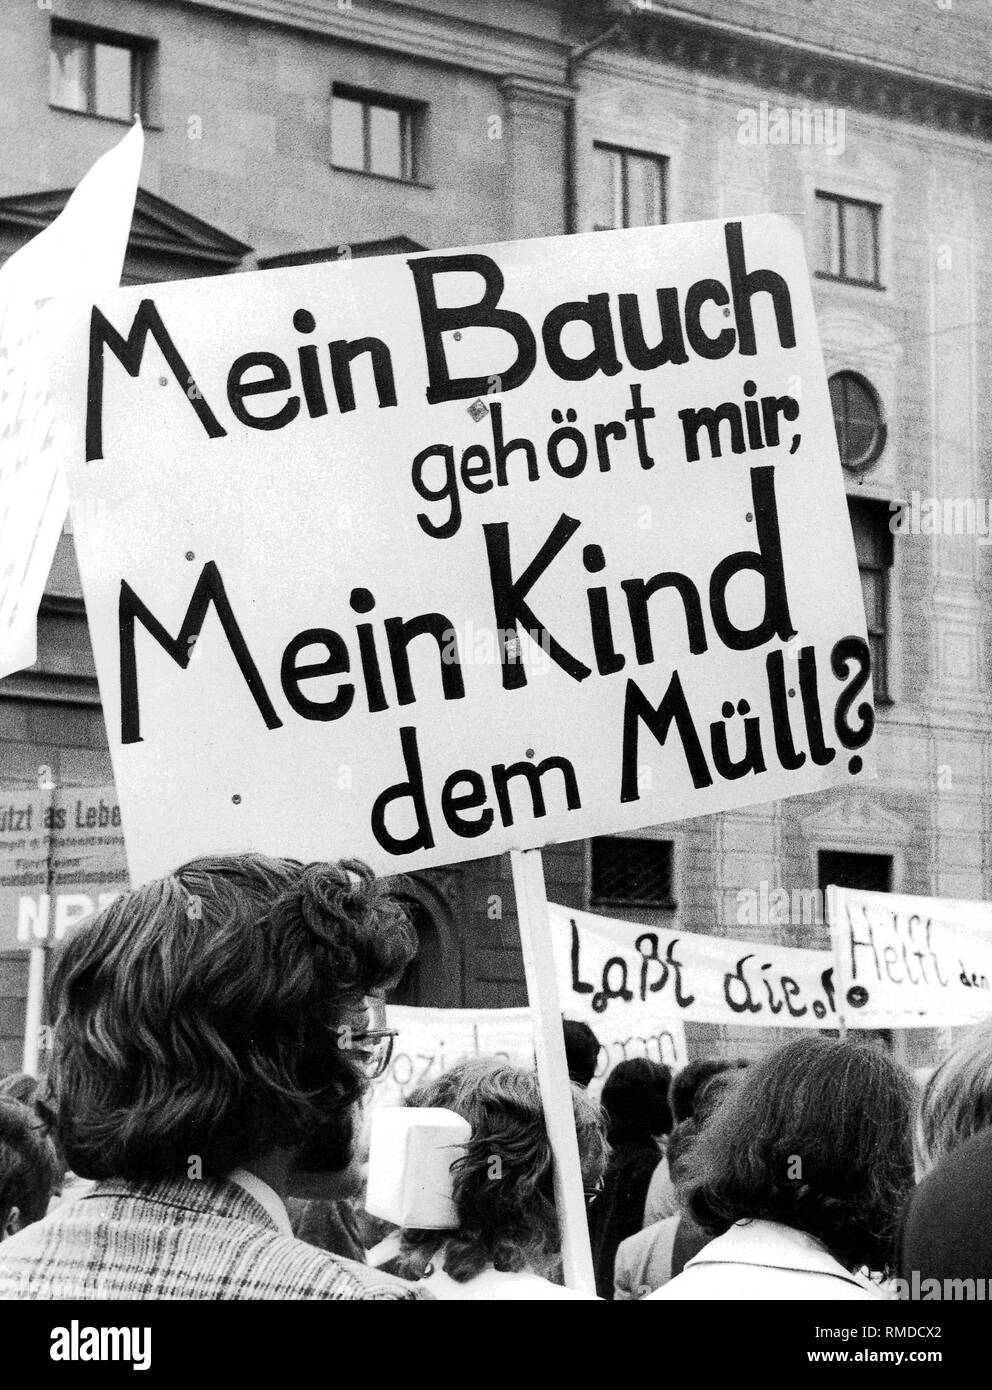 Demonstranten protestieren in München (1974) gegen die Abtreibung. Große Banner: "Mein Bauch gehört mir, mein Kind auf den Müll?" Mit dem Aufkommen der Bewegung der neue Frauen, Abschnitt 218 in die Debatte zurück. Die sozial-liberale Koalition eingeleiteten Reformbemühungen in den 1970er Jahren, die 1974 auf die durch eine enge parlamentarische Mehrheit geführt. Der Prozeß, die dann von der CDU/CSU-Fraktion vor dem Bundesverfassungsgericht war zugunsten der Kläger und am 25. Februar 1975 über das Gesetz gekippt beurteilt. Für das Gebiet der alten Bundesrepublik, Stockfoto